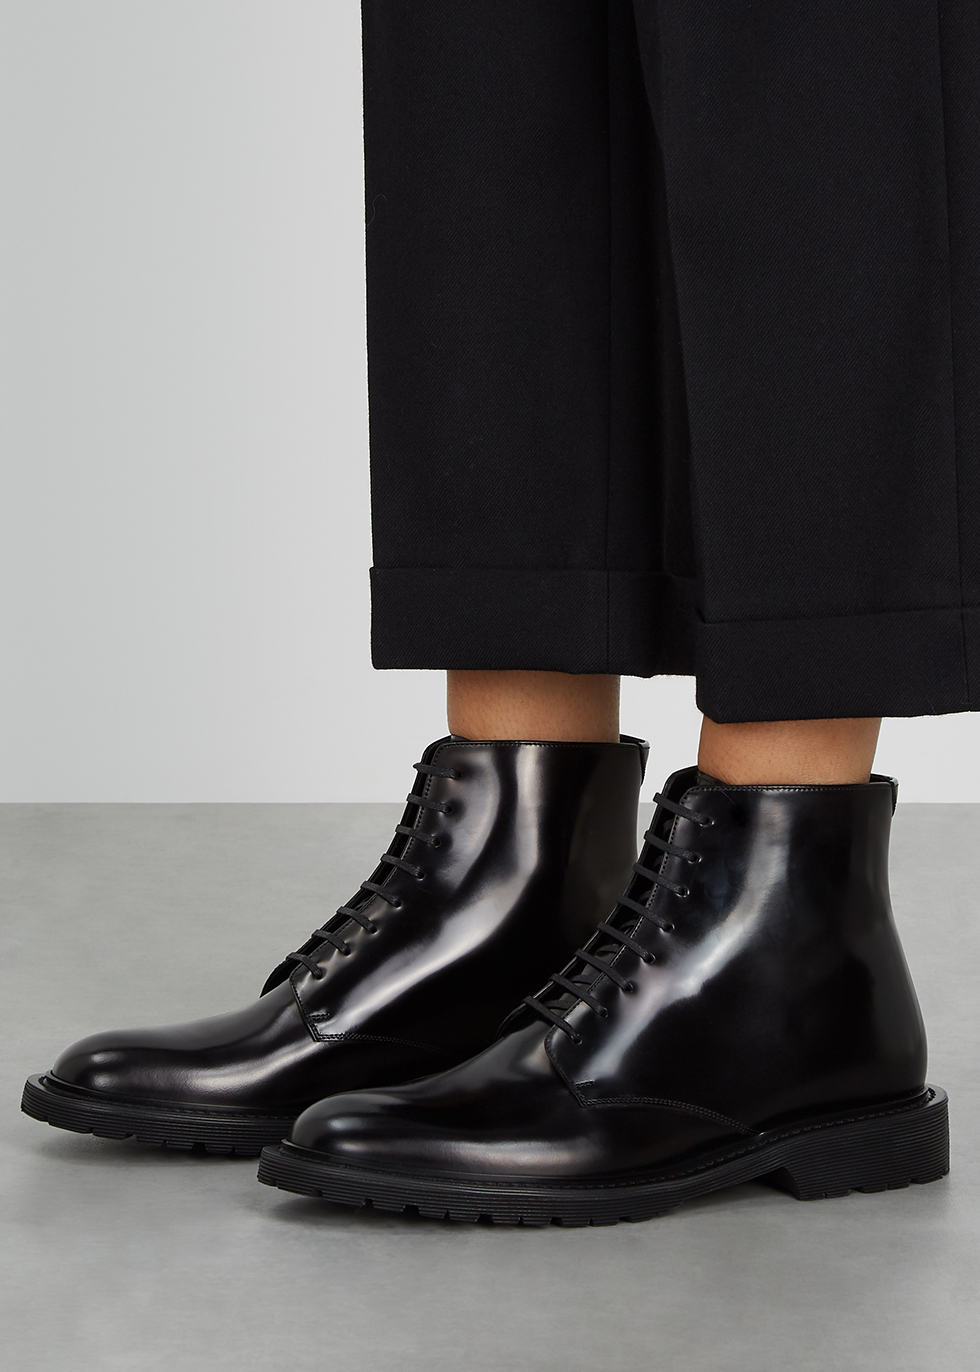 boots similar to saint laurent